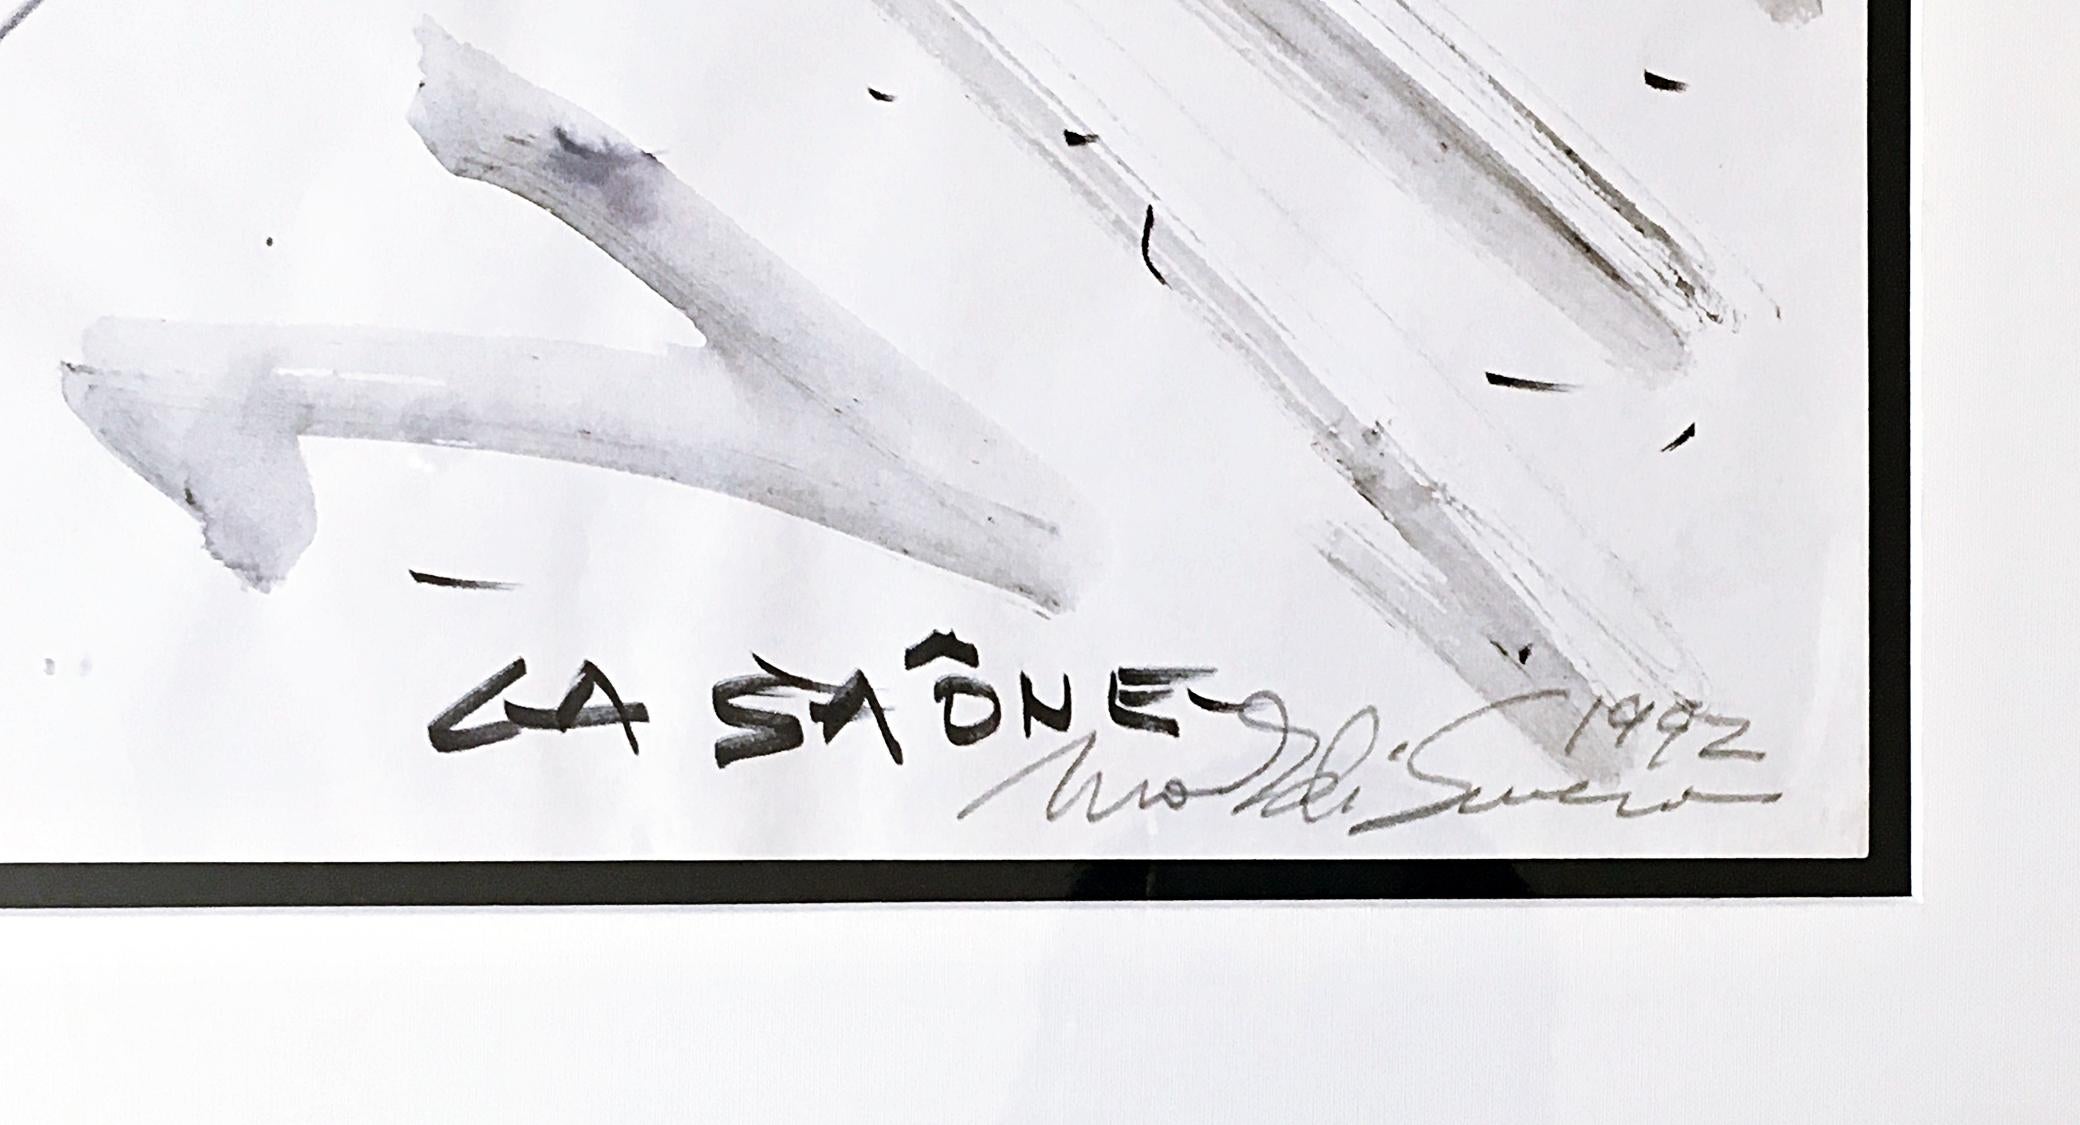 Mark di Suvero
Projet de sculpture à Chalon-sur-Saône, 1992
Marqueur, aquarelle et lavis d'encre sur papier.
Signée et datée à la main par l'artiste en bas à droite sur le devant.
Cadre inclus
Cette rare aquarelle signée de Mark di Suvero est une